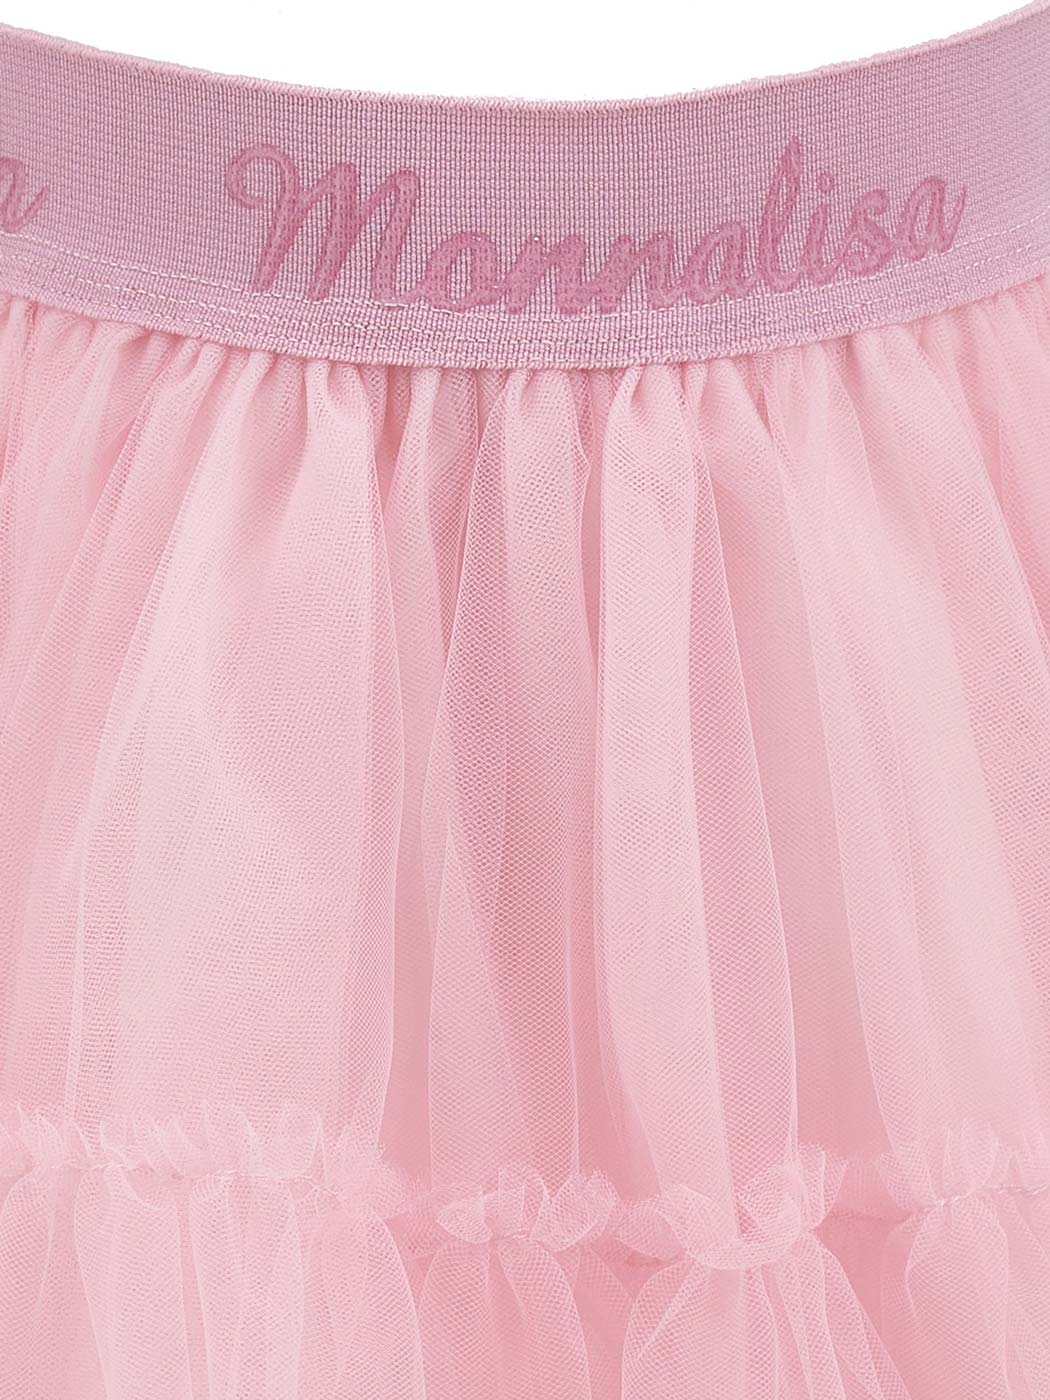 MONNALISA Ροζ Φούστα από τούλι με μεταξωτή αφή